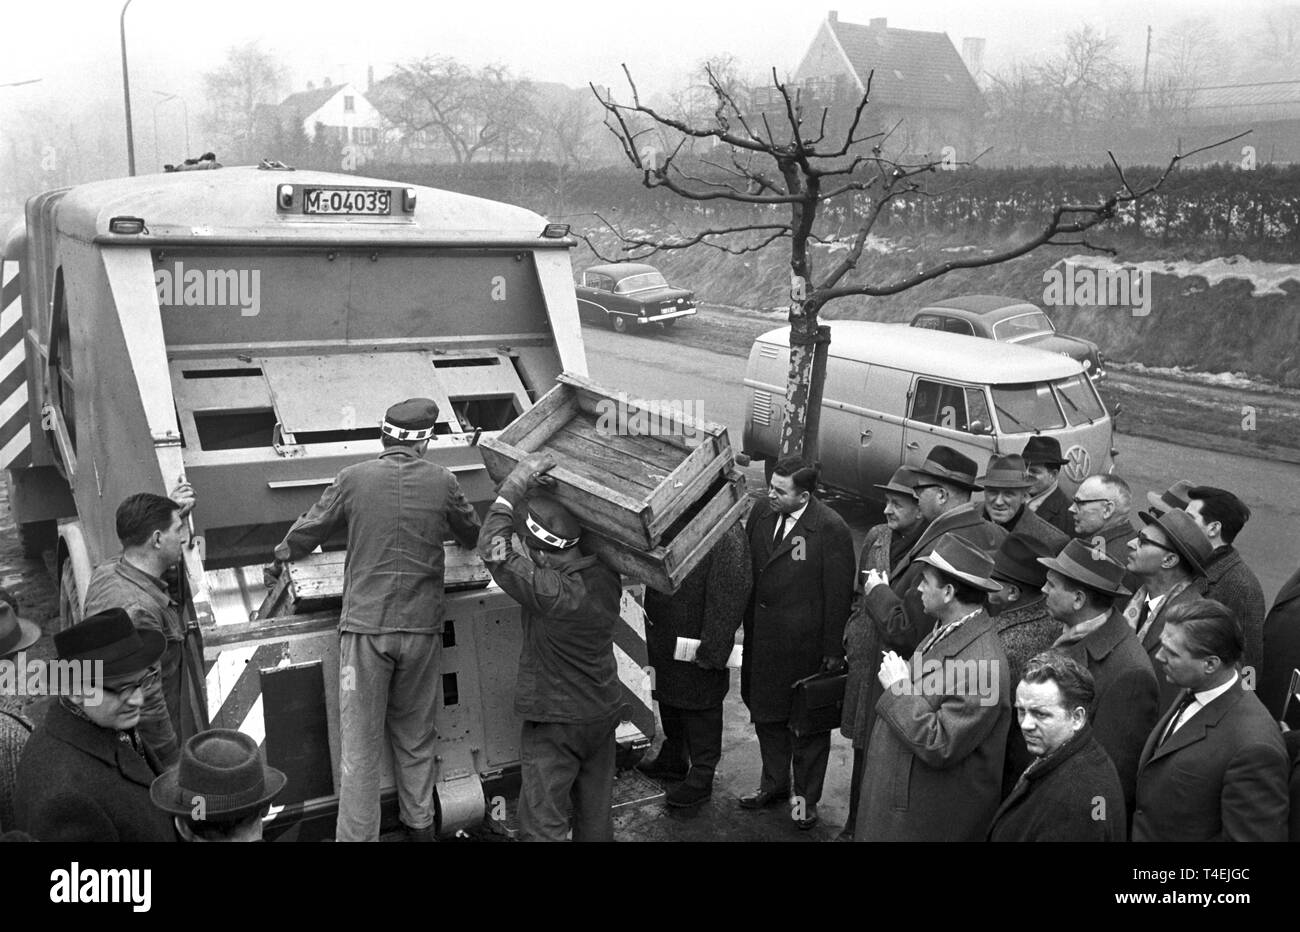 Eine neue Presse Müllsammelfahrzeug Für die Müllabfuhr ist in Mühlheim an der Ruhr am 11. Februar 1963 vorgestellt. Das Bild zeigt das neue Fahrzeug, das eine integrierte drücken Sie sogar sehr sperrigen Gegenständen zu hacken. | Verwendung weltweit Stockfoto